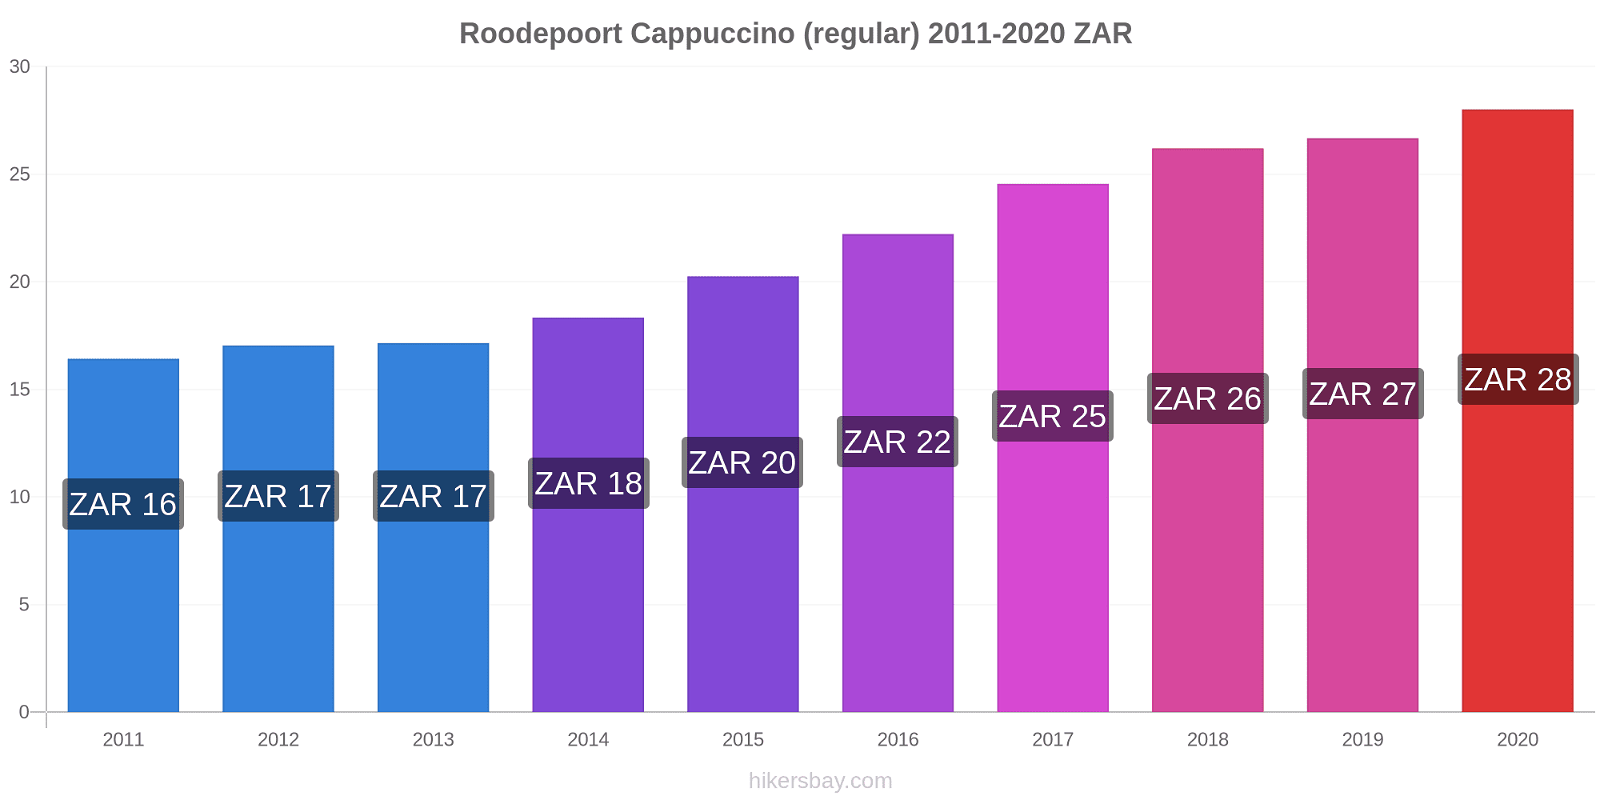 Roodepoort price changes Cappuccino (regular) hikersbay.com